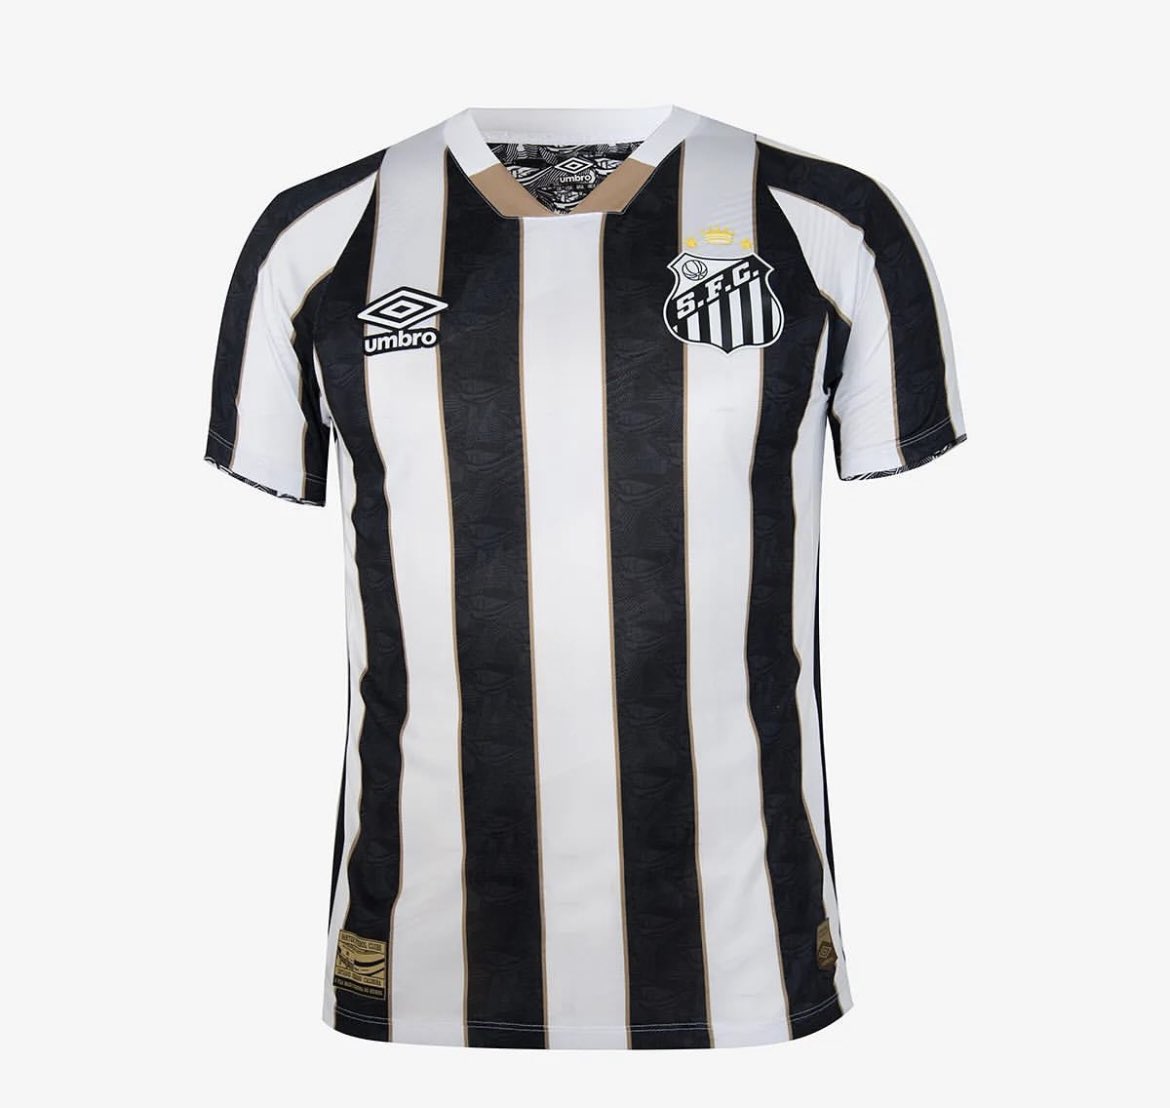 Pra comemorar os 112 anos do #Santos e em homenagem à Vila Belmiro, foi lançada a nova camisa #umbro! Gostaram?